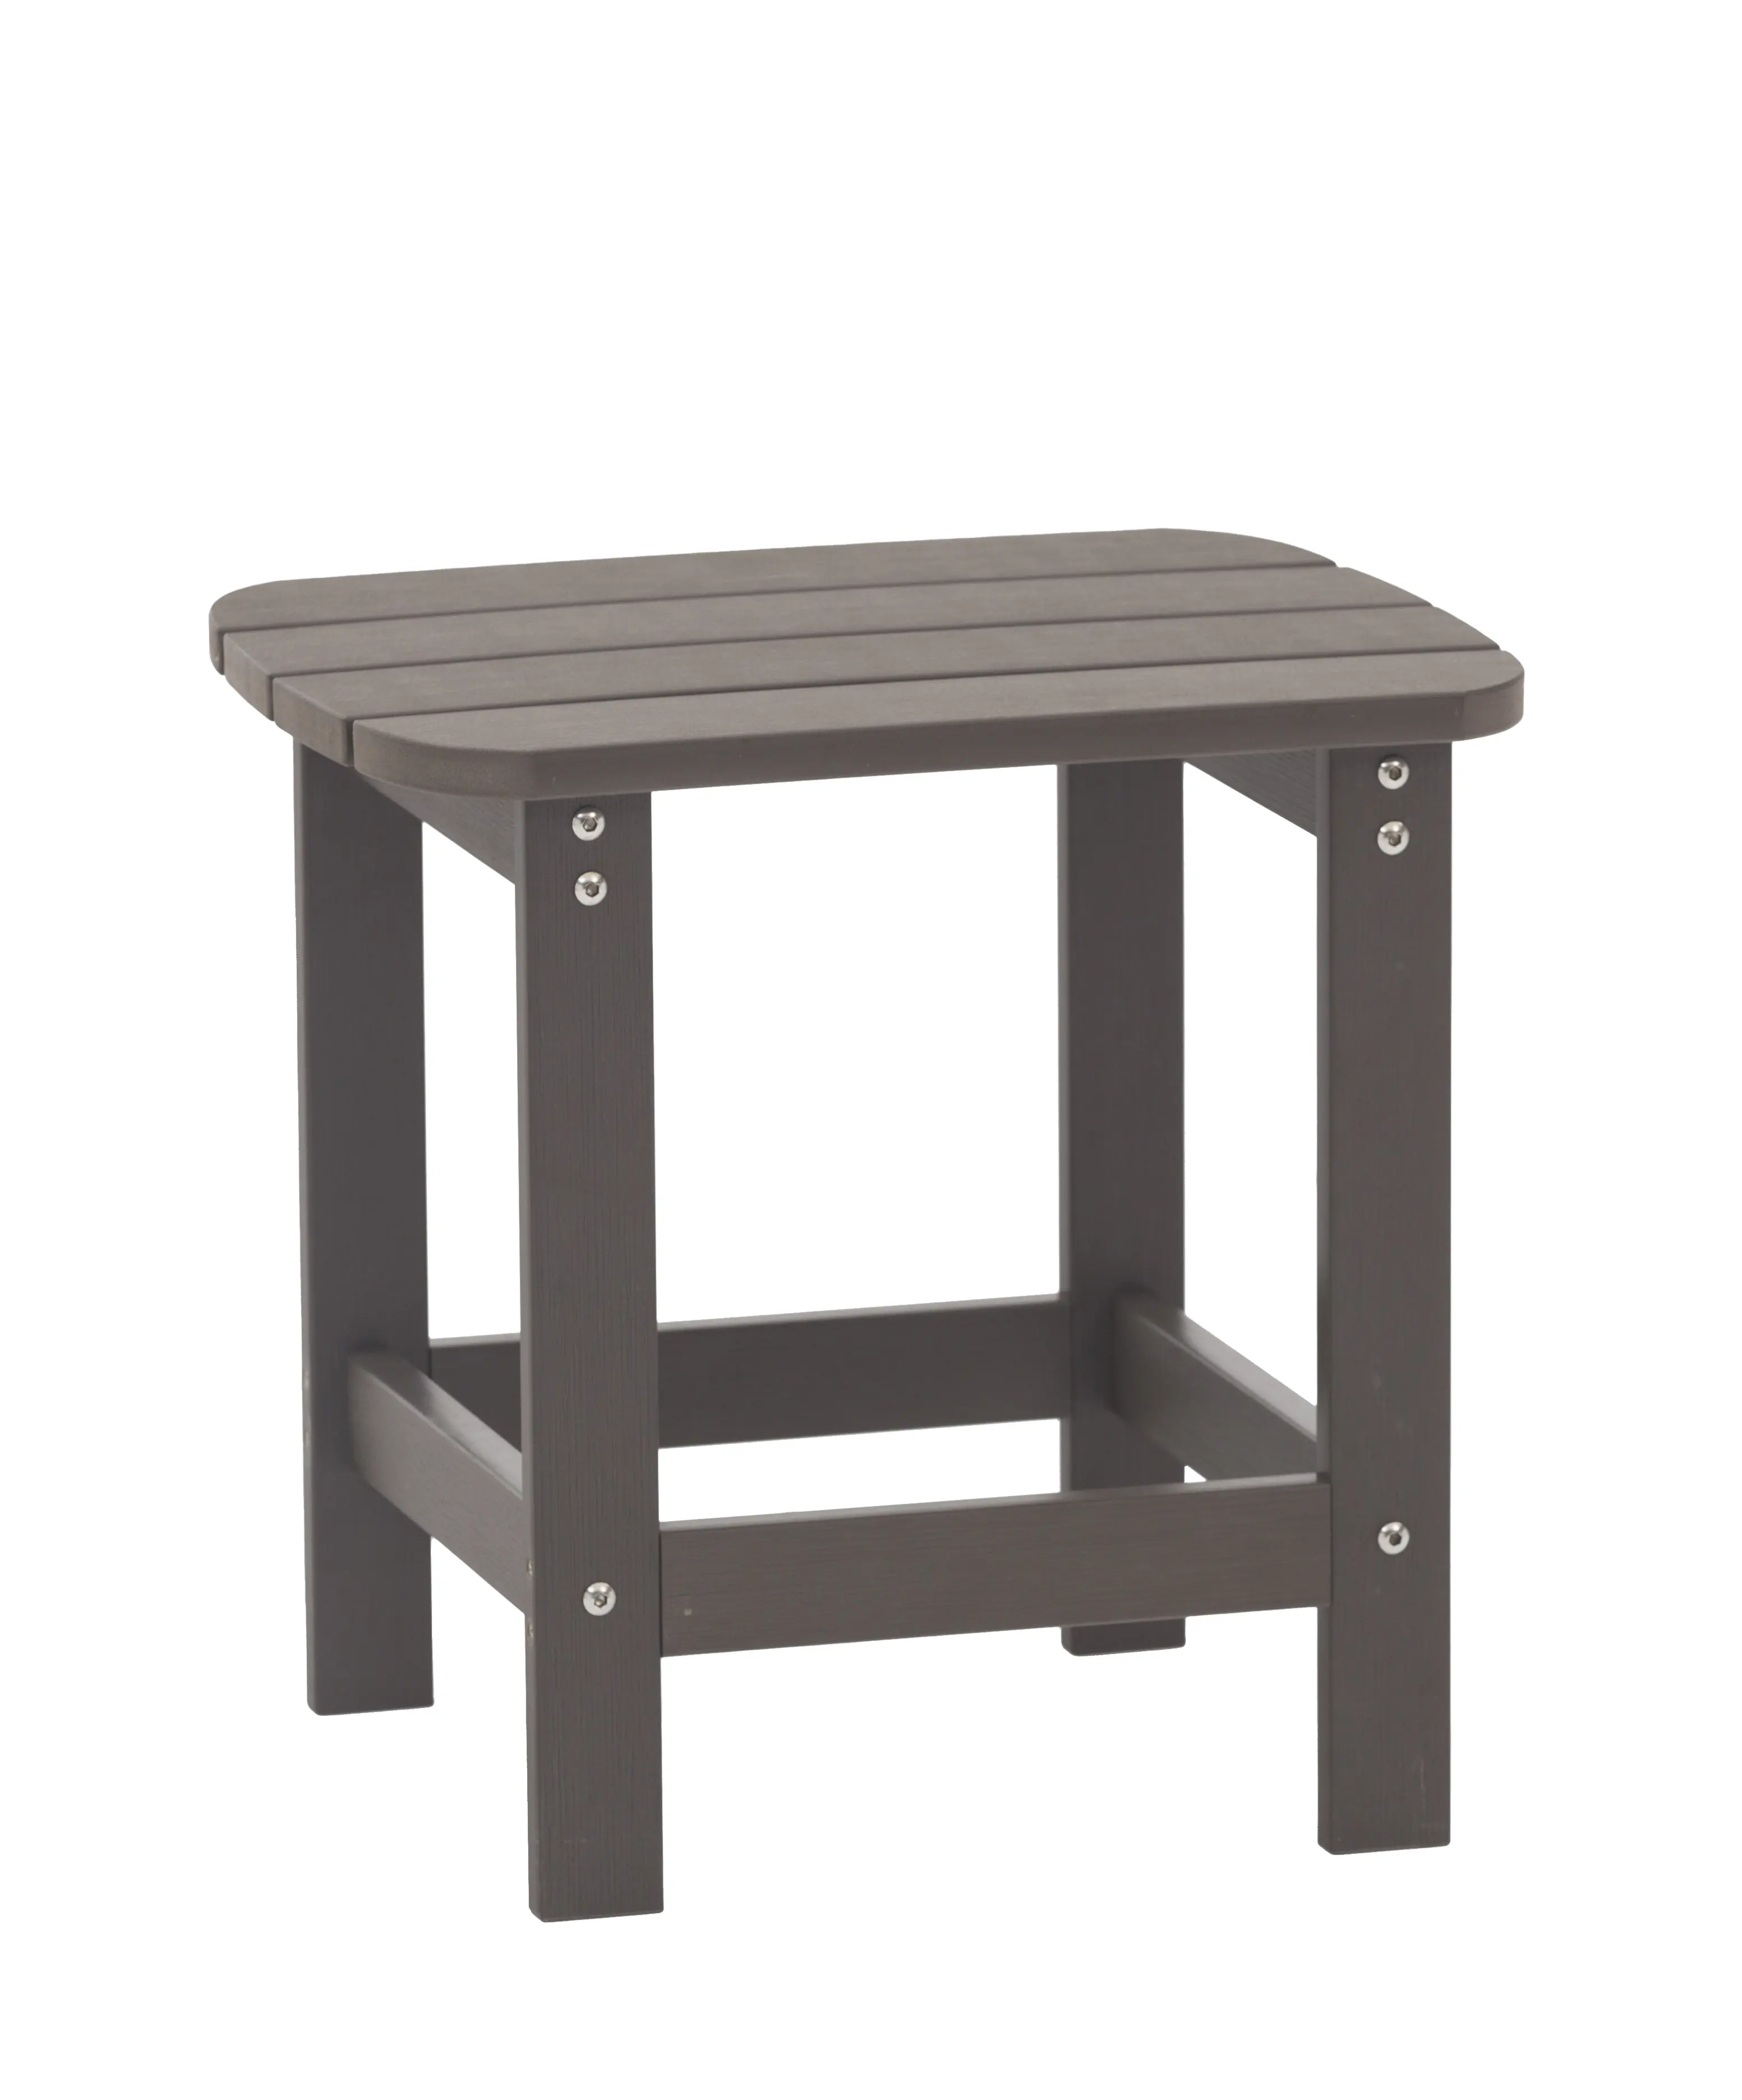 طاولة جانبية أحادية الطابق، طاولات جانبية خشبية وبلاستيك بألوان عديدة، كرسي أدرونداك بنمط شائع لعام 2023